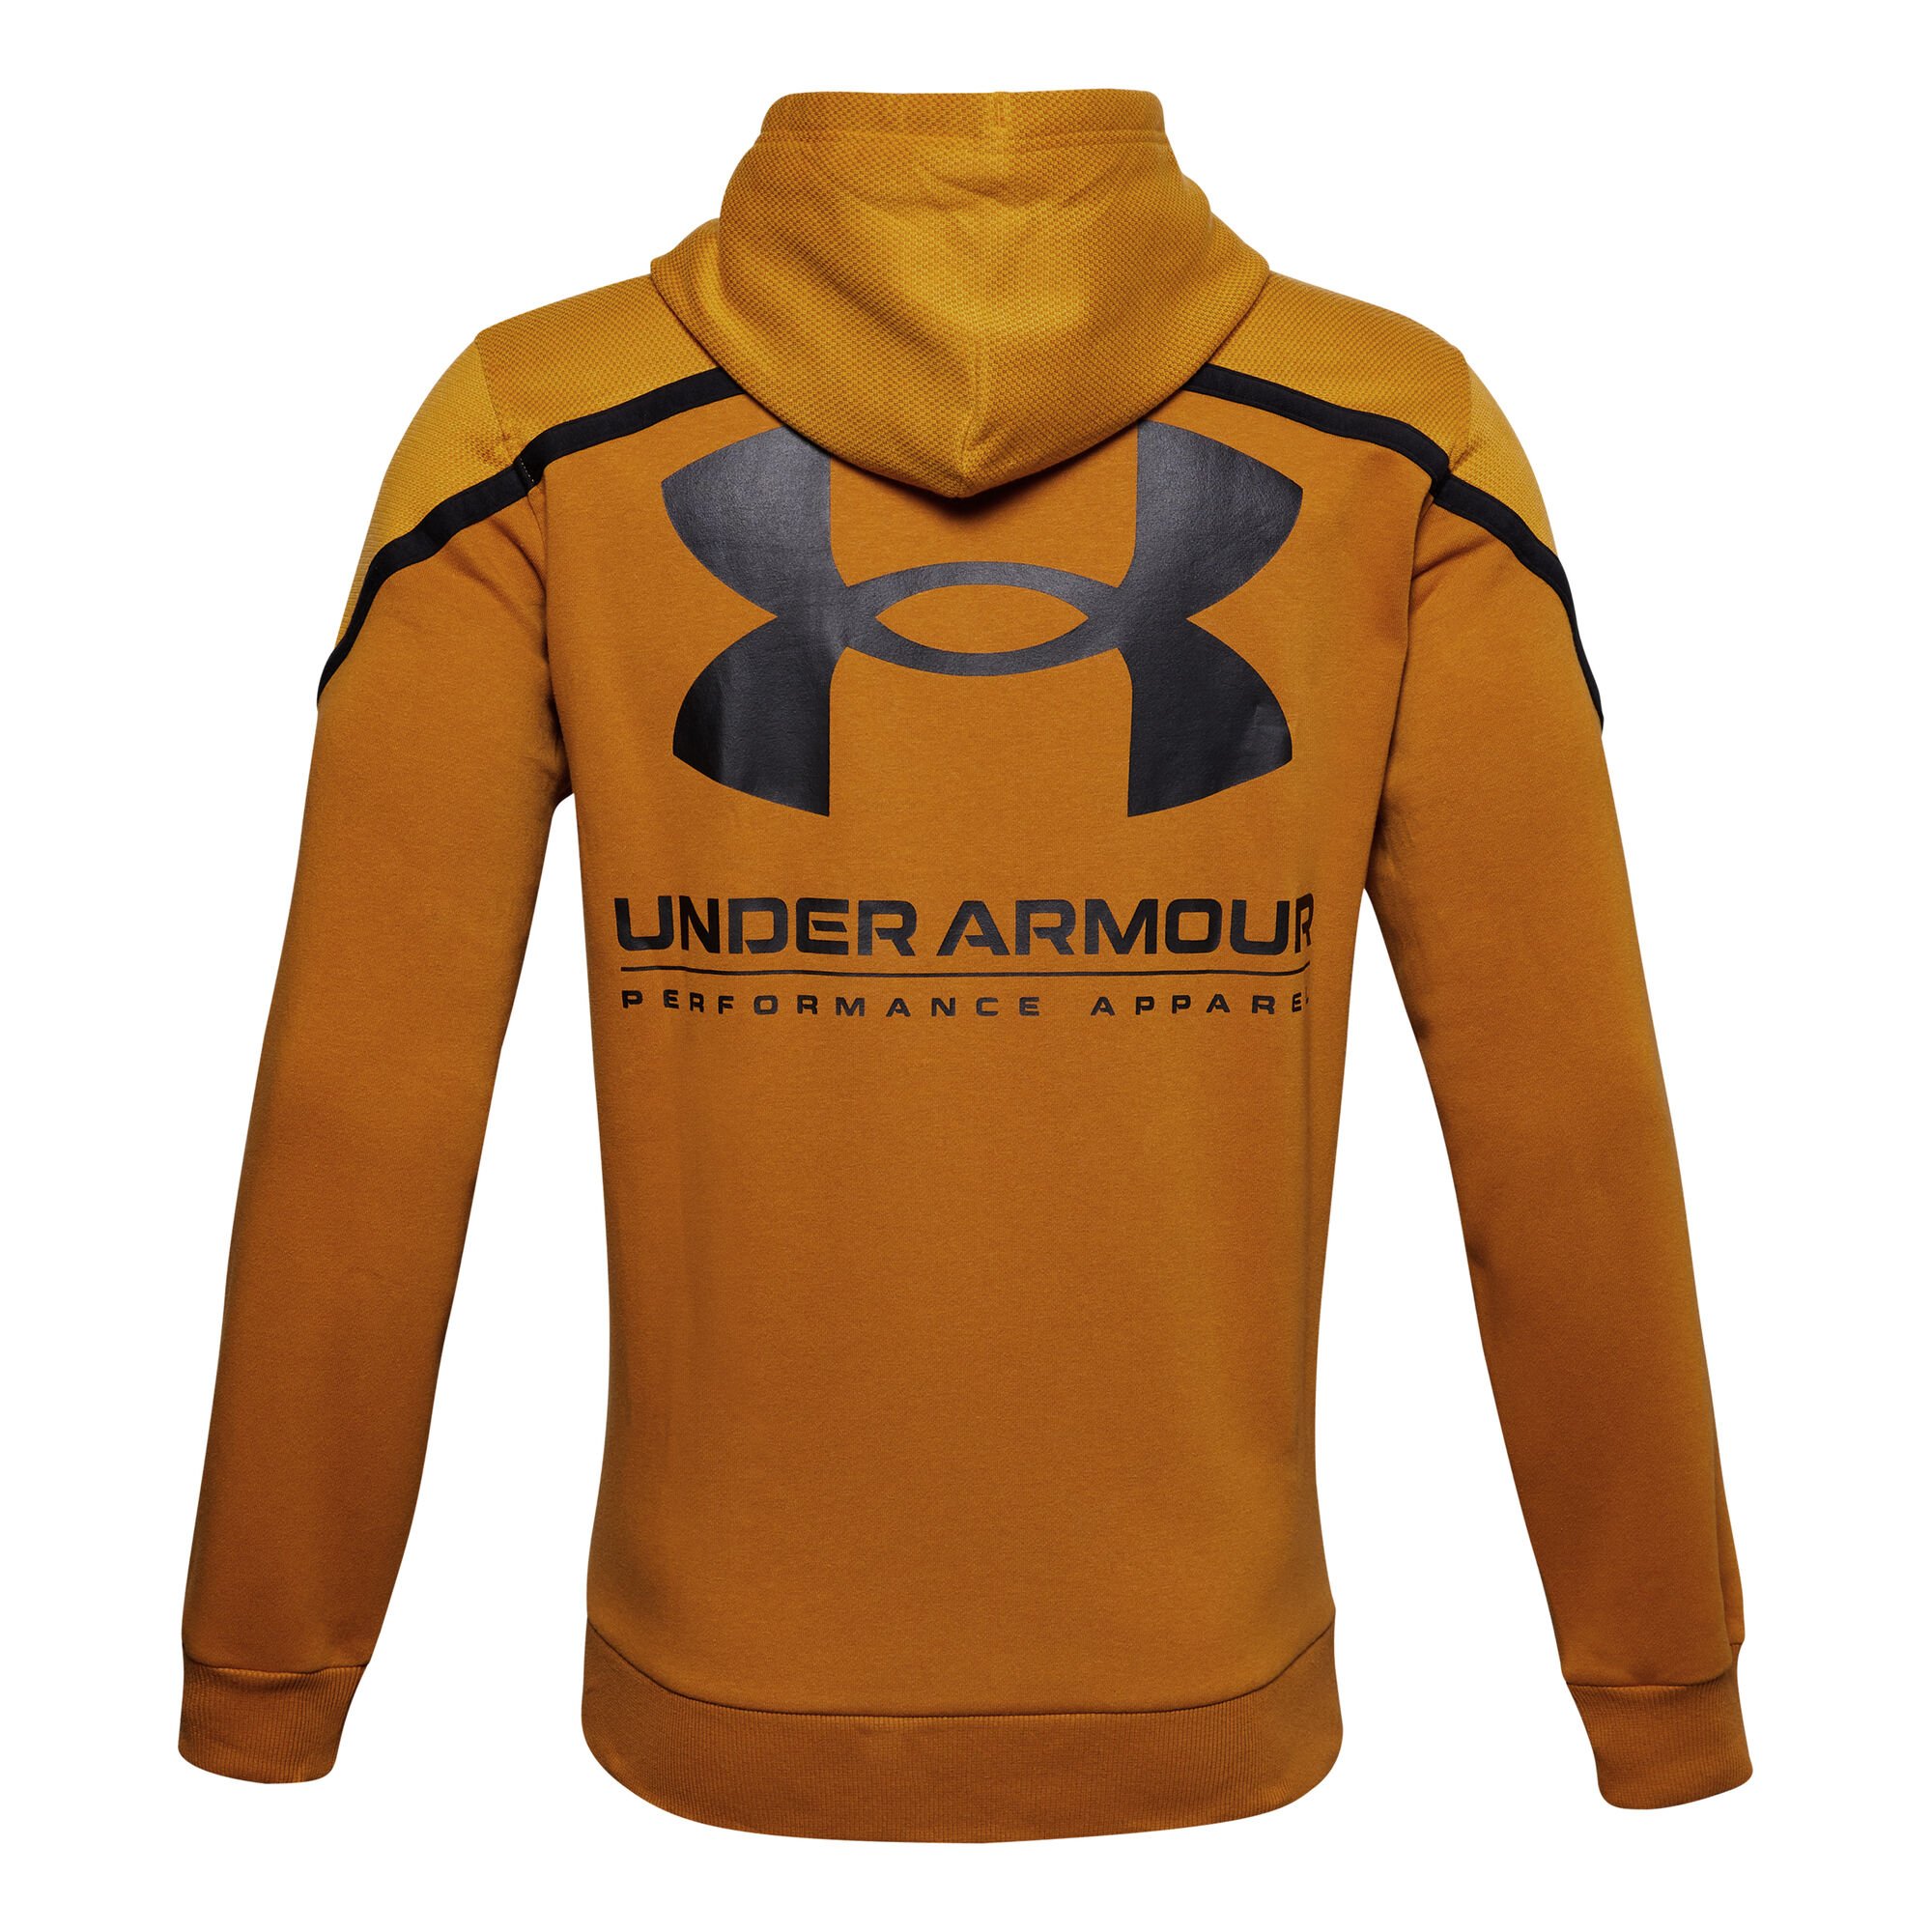 buy Under Armour Rival AMP Hoody Men - Golden Yellow, Brown online ...